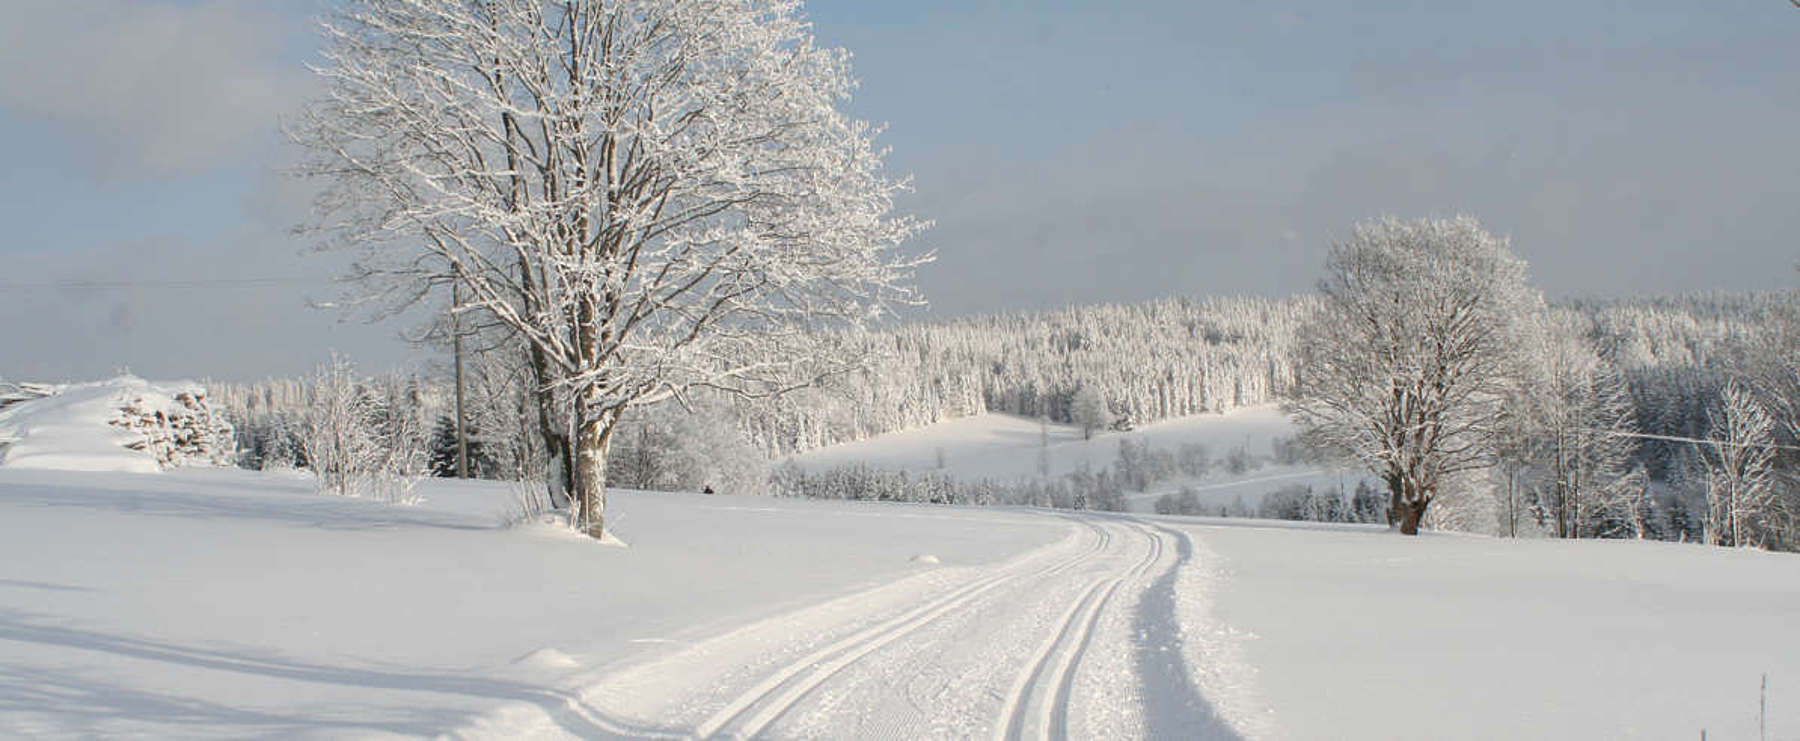 Finsterau cross-country ski trail